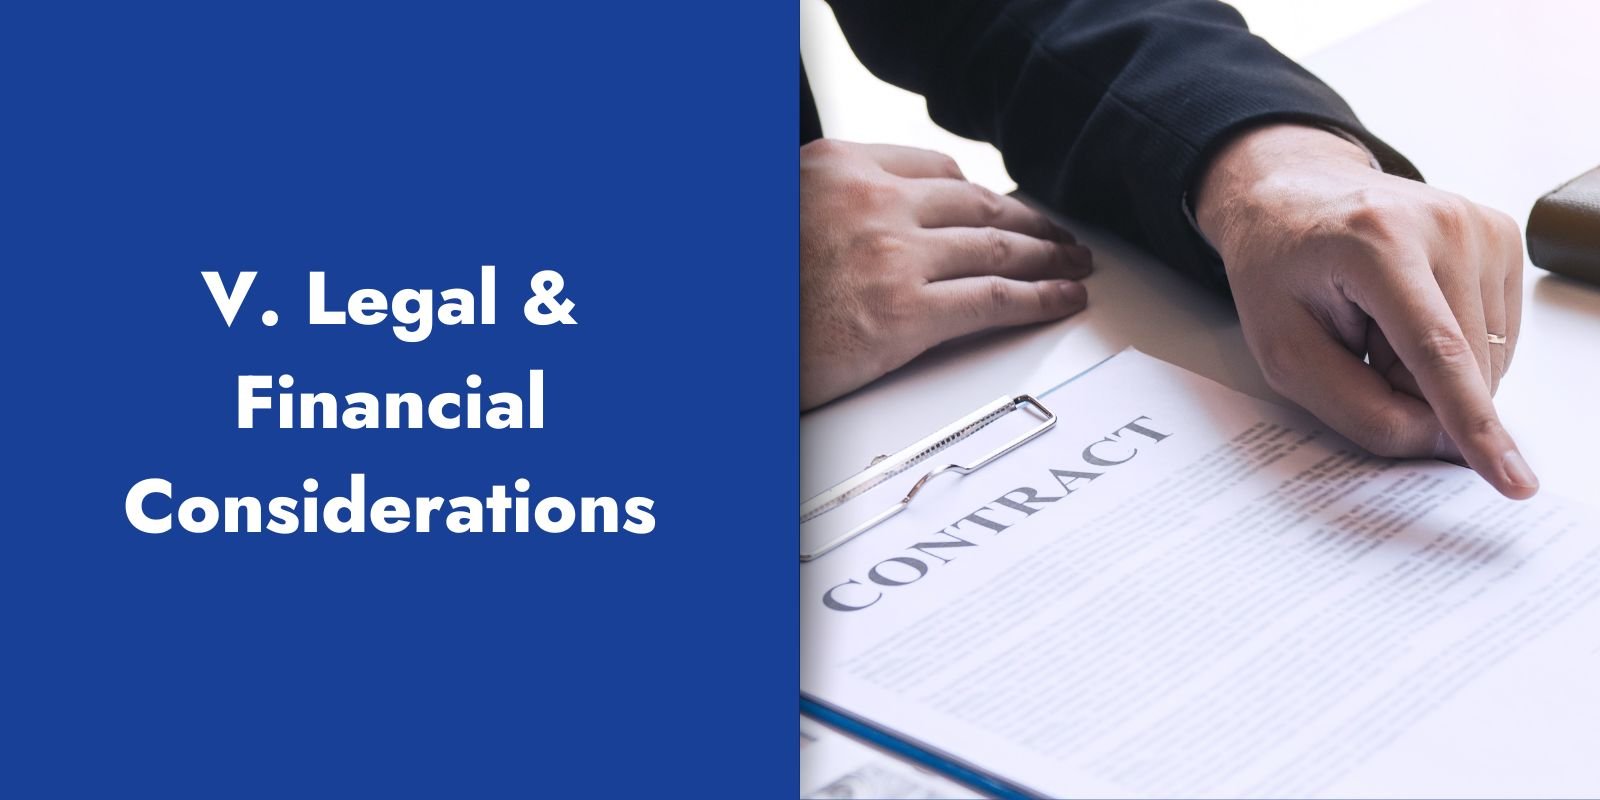 V. Legal & Financial Considerations